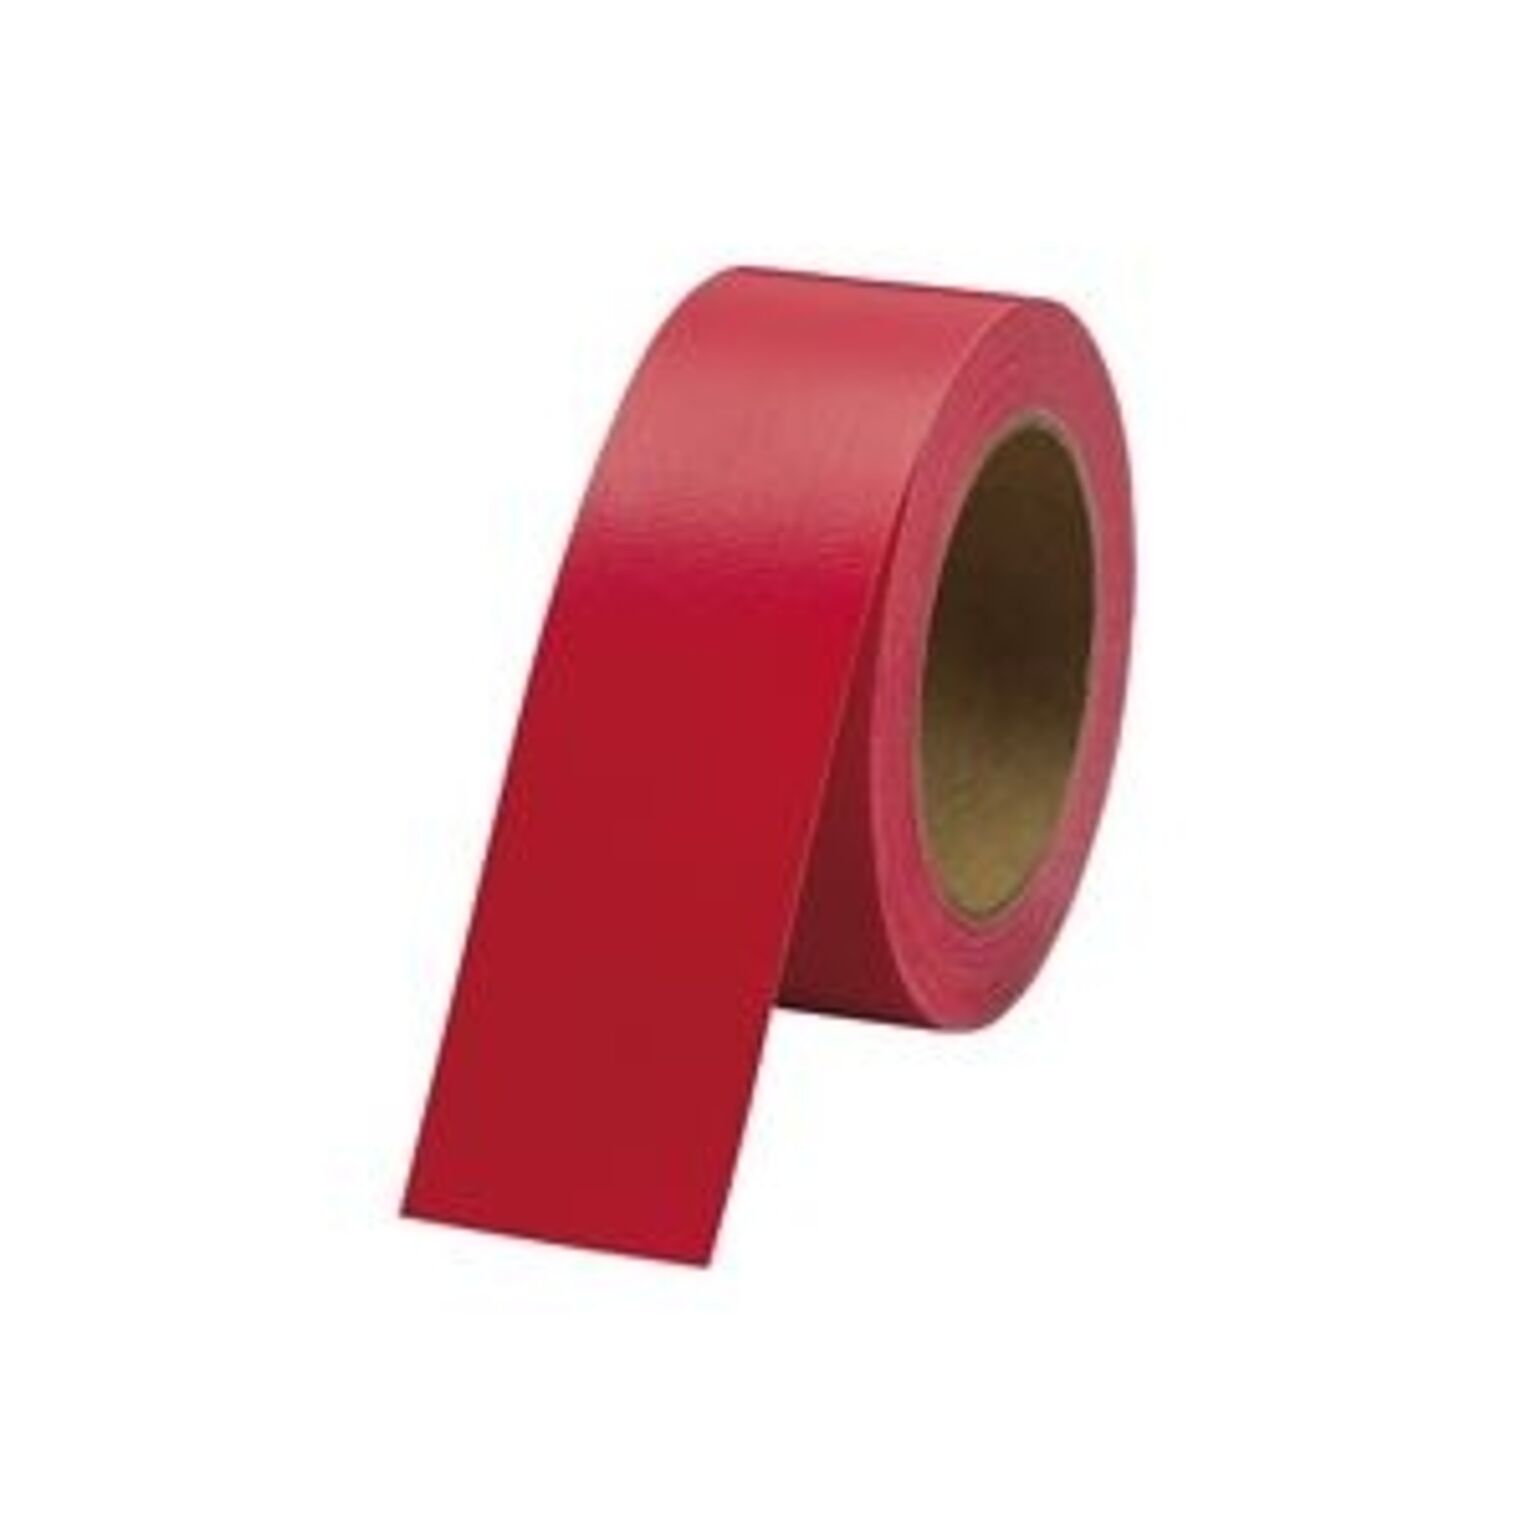 業務用100セット) ジョインテックス カラー布テープ赤 1巻 B340J-R 通販 RoomClipショッピング